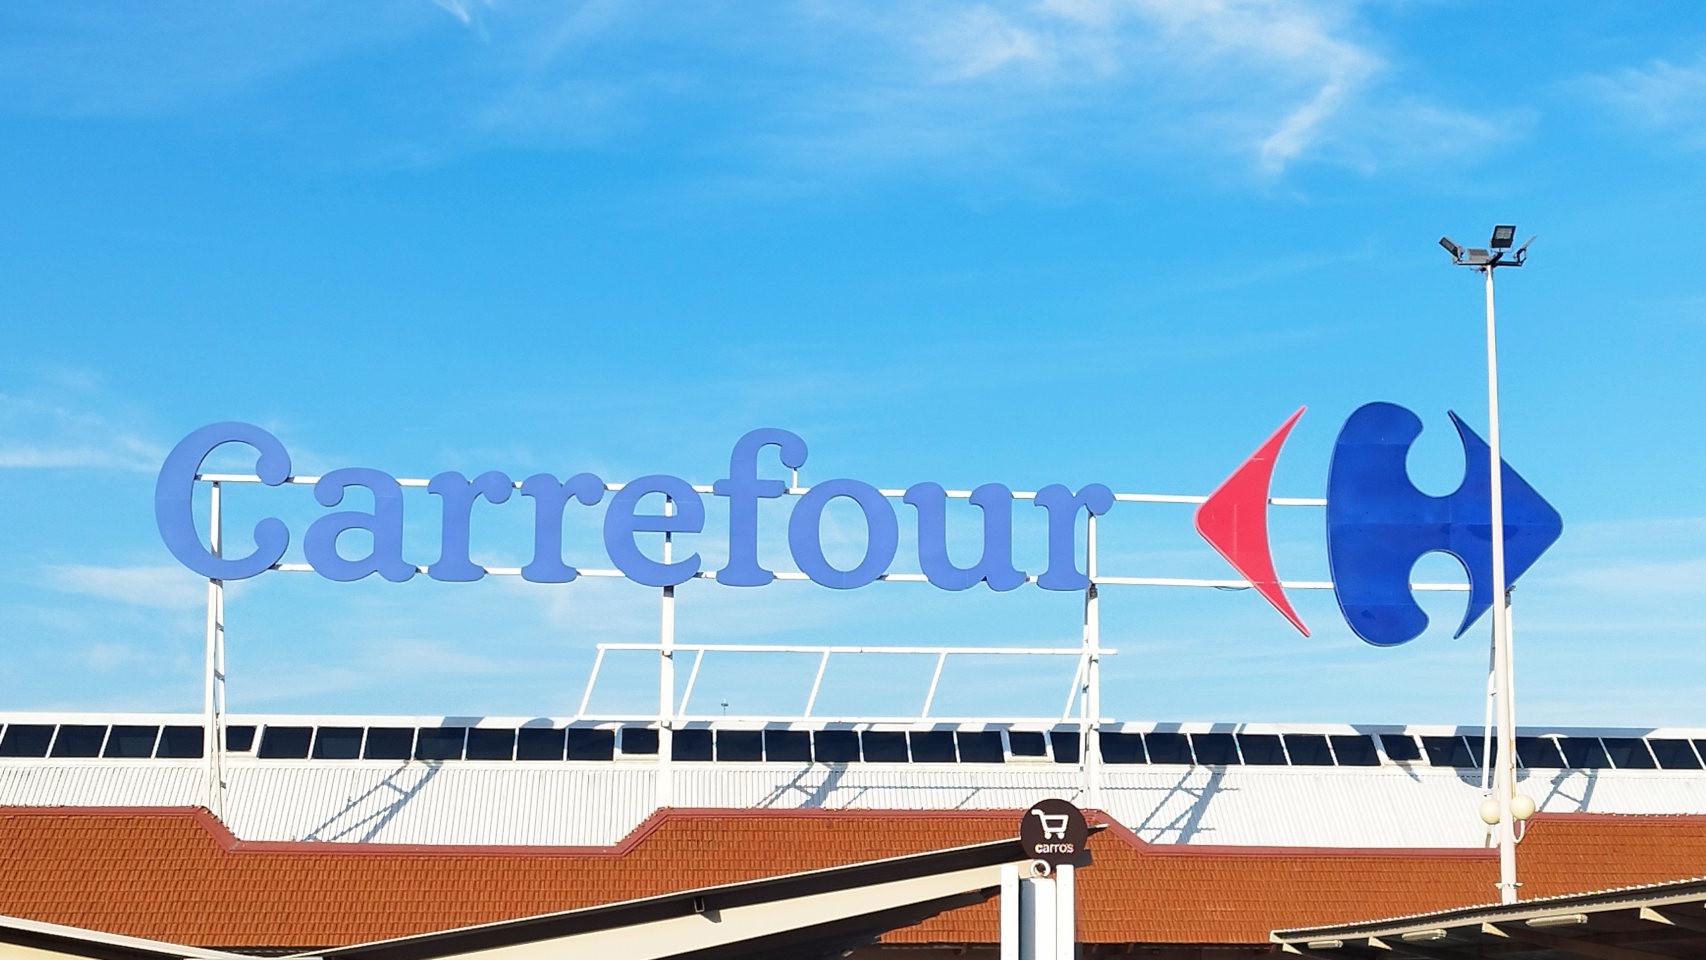 Carrefour liquida el reloj deportivo más barato de su web: solo 12 euros